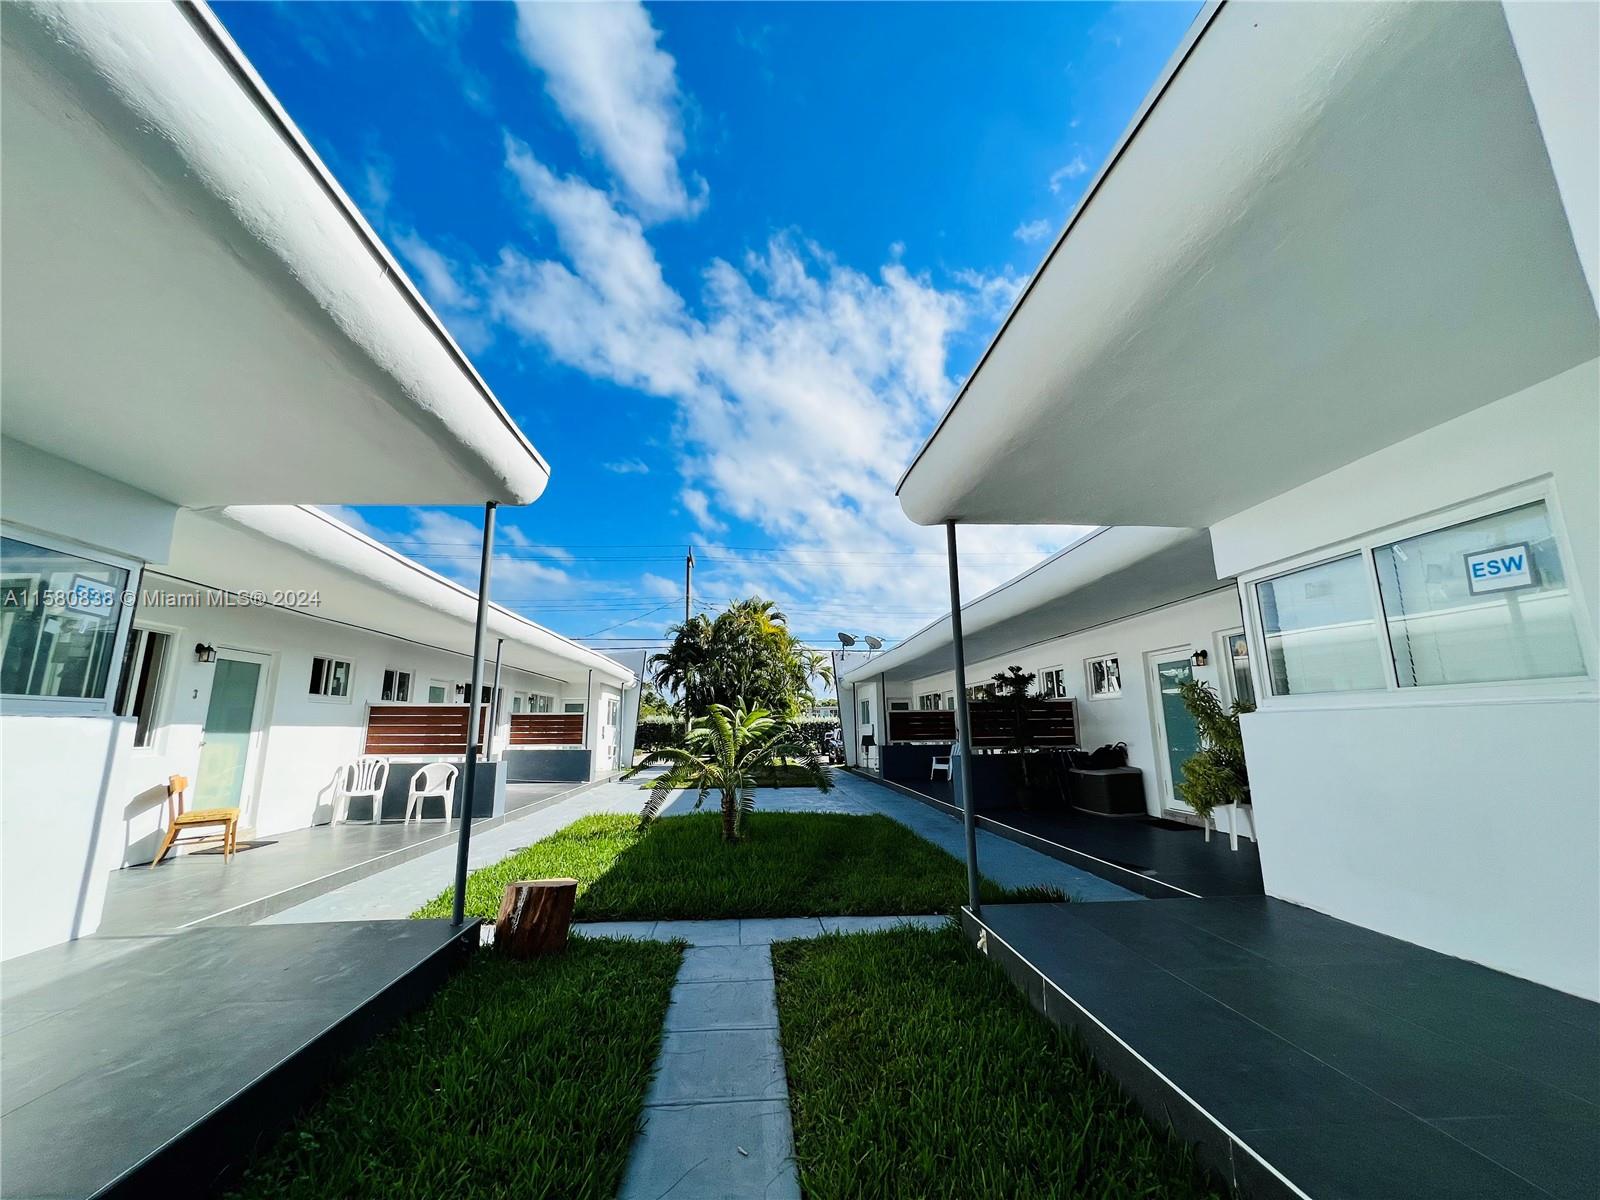 Rental Property at 275 S Shore Dr 1, Miami Beach, Miami-Dade County, Florida - Bedrooms: 2 
Bathrooms: 2  - $2,800 MO.